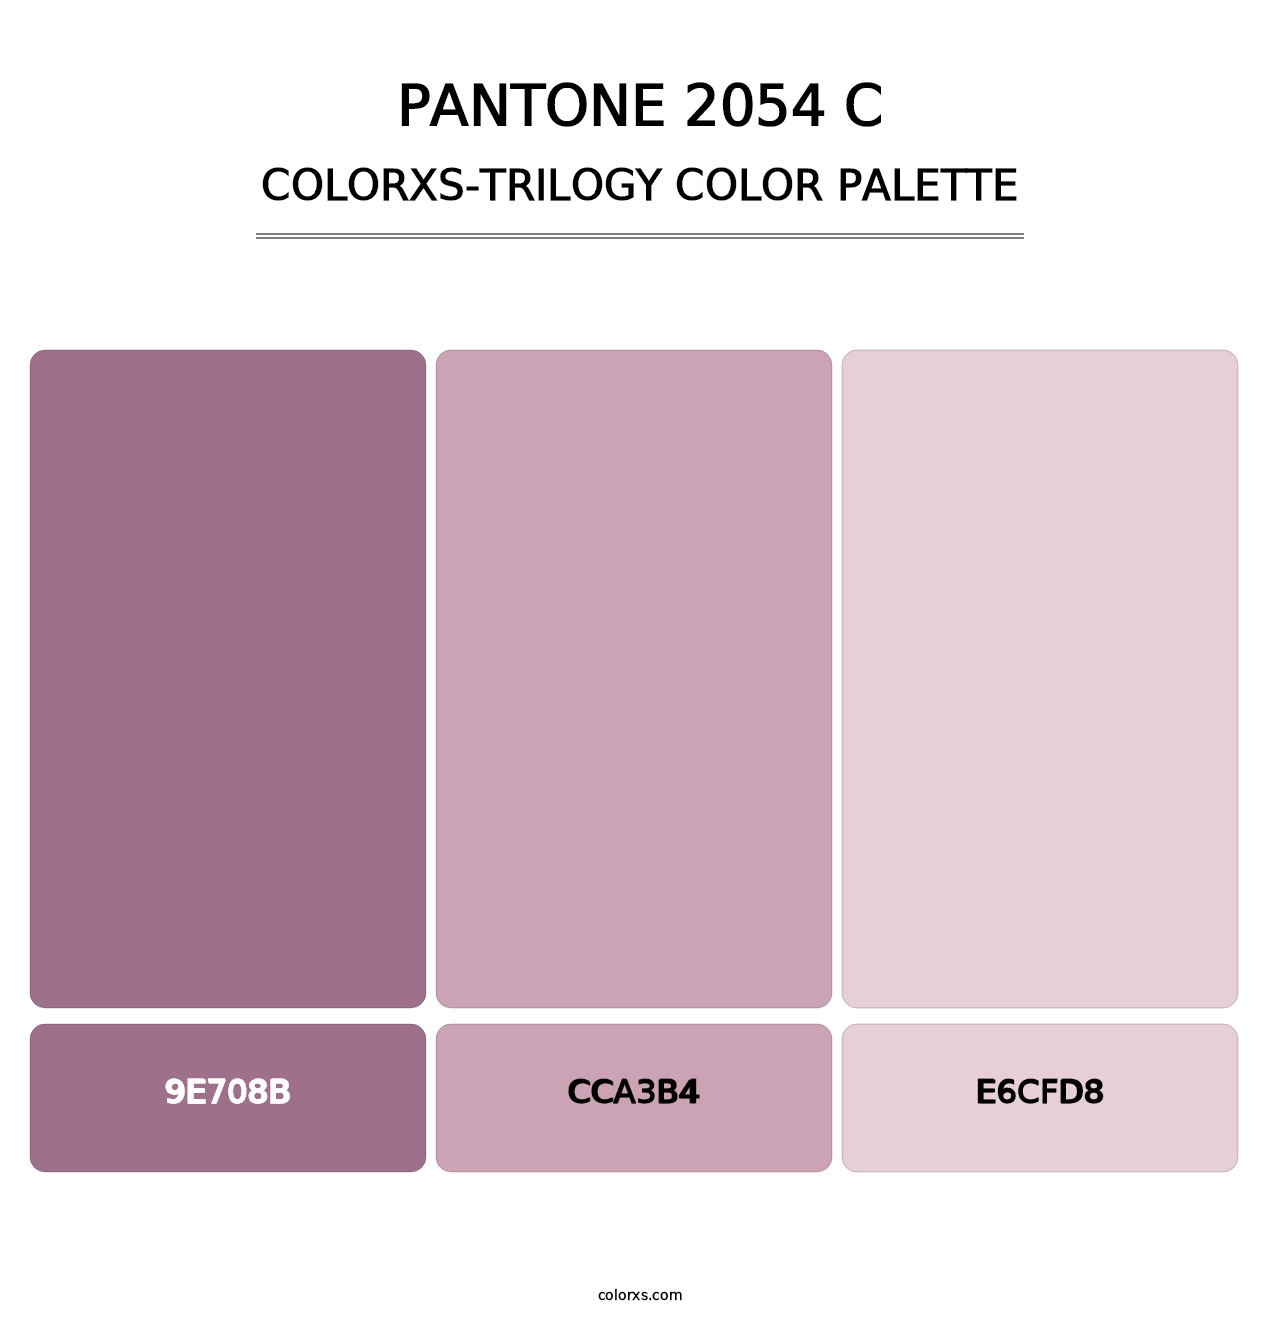 PANTONE 2054 C - Colorxs Trilogy Palette